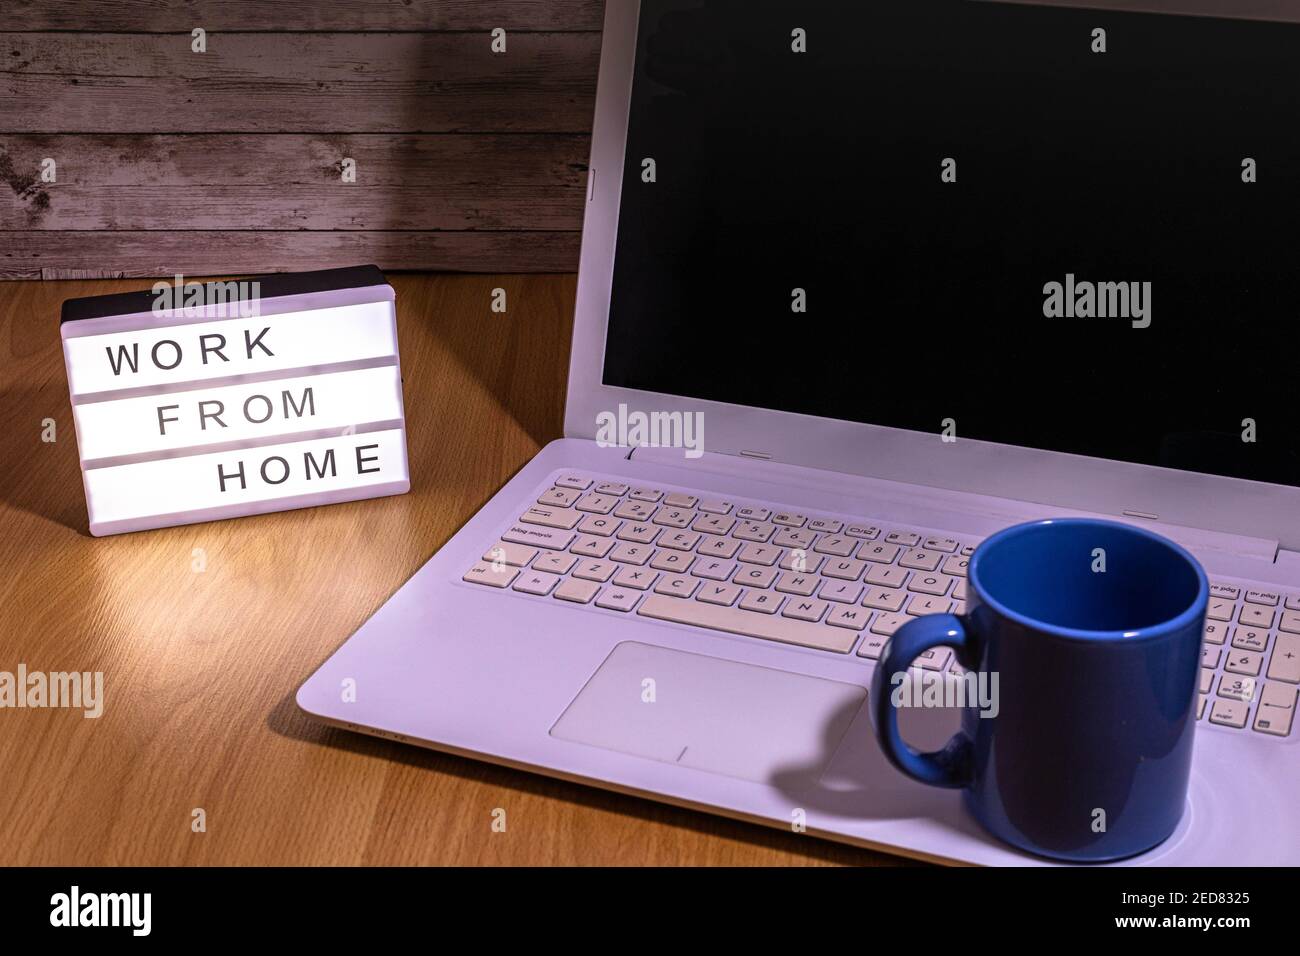 taza de café azul colocada en la parte superior del portátil Con una caja de luz que indica el trabajo desde casa por social distancia en tiempo de concepto de salud de covid19 Foto de stock